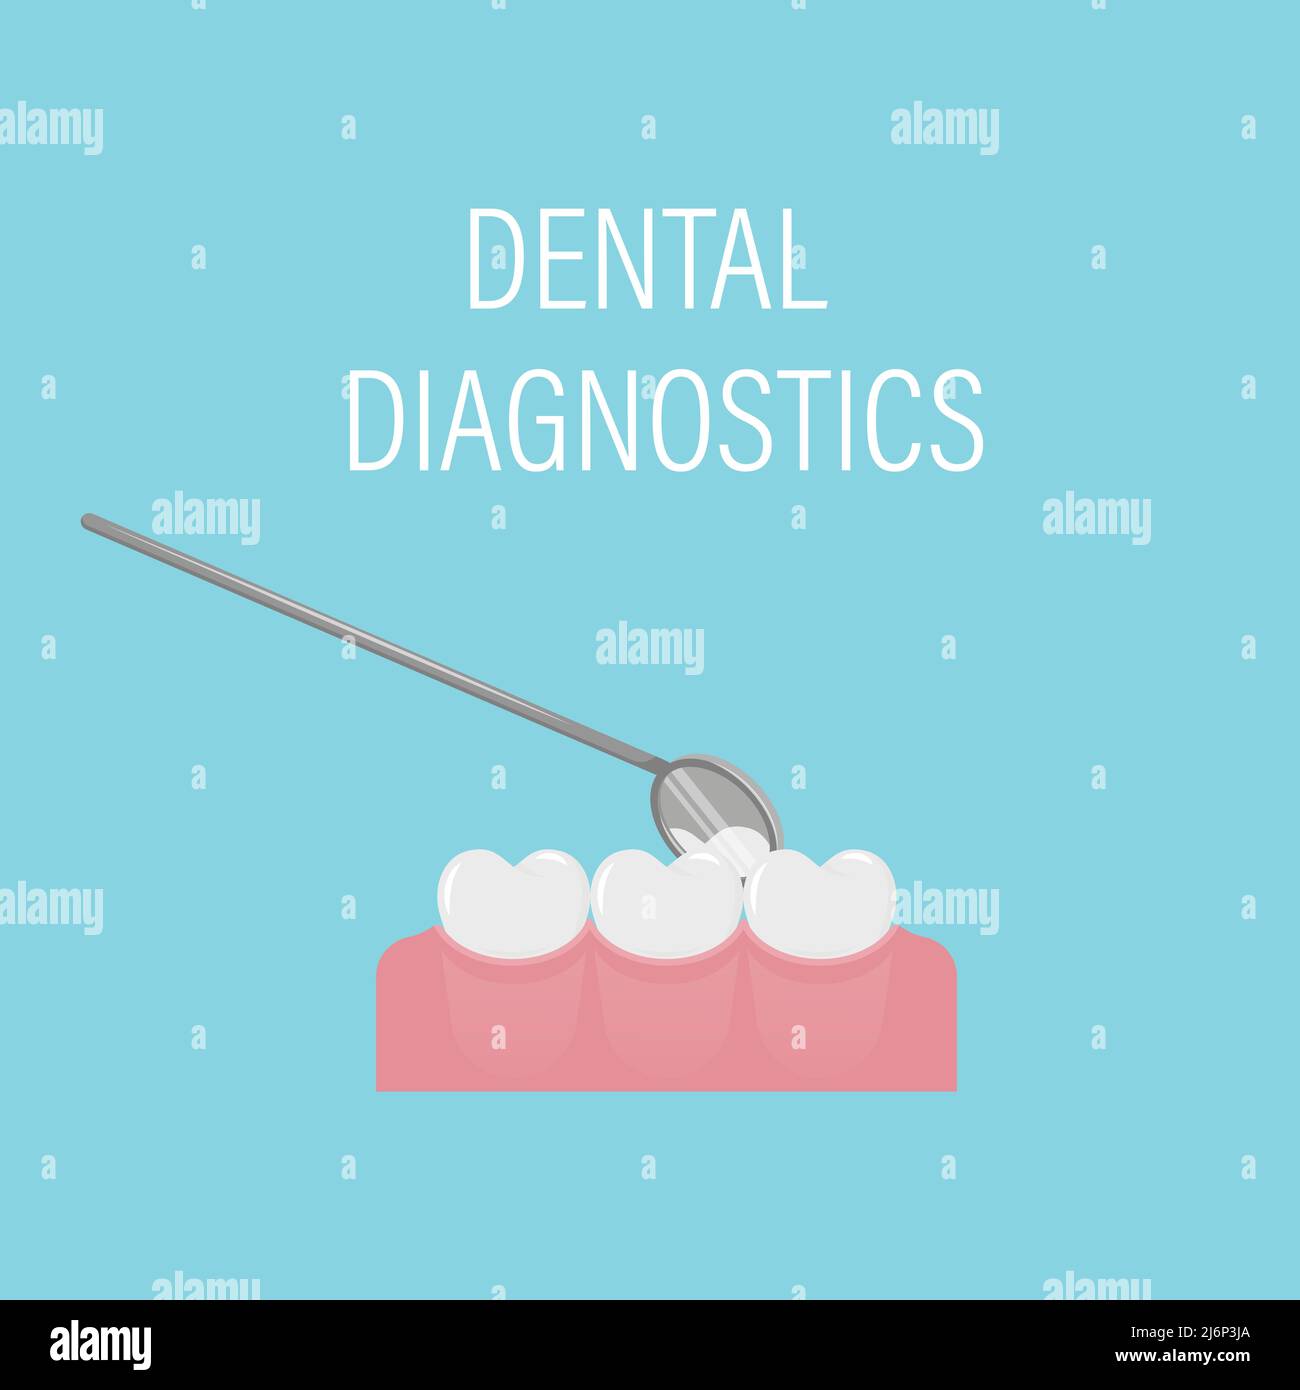 Examen dentaire des dents avec un miroir et des outils. Rendez-vous dentaire professionnel préventif. Une bouche ouverte avec des dents blanches. Hygiène bucco-dentaire. Dentaire Illustration de Vecteur